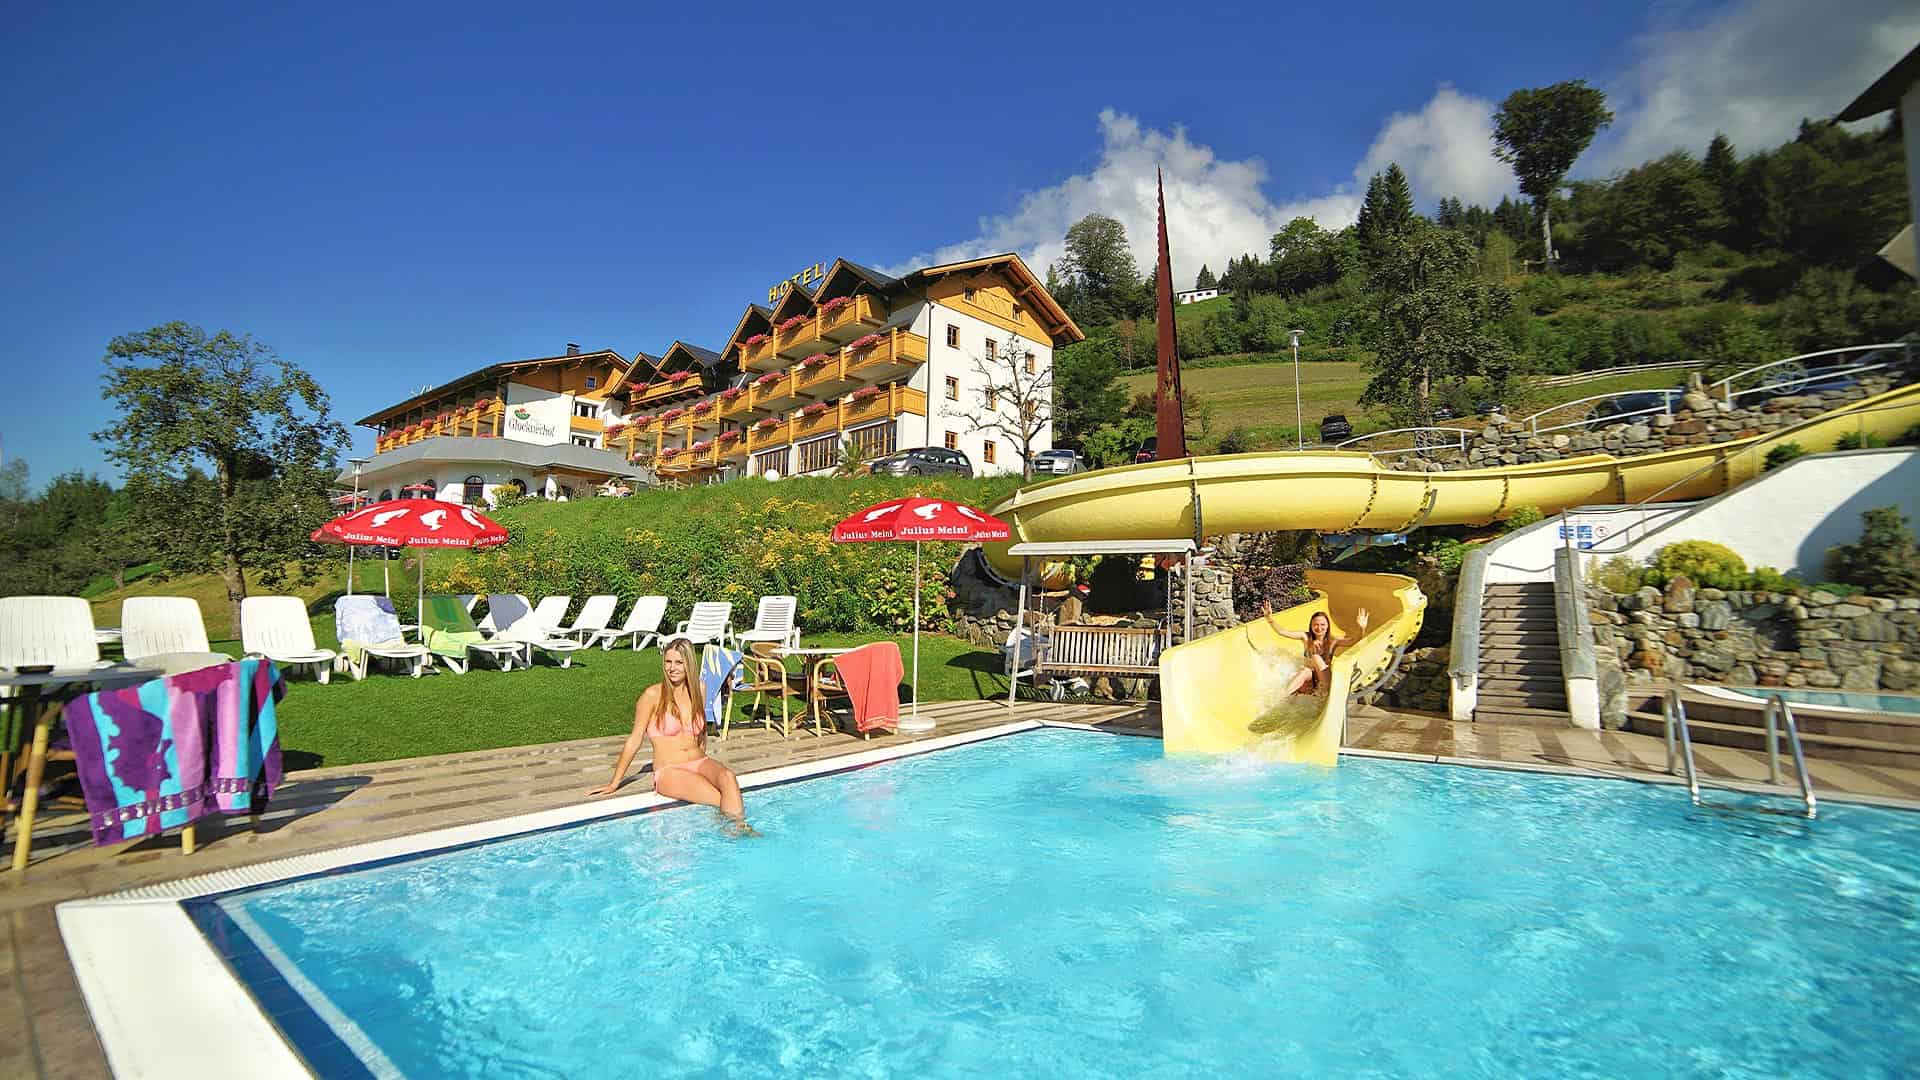 Hotel Glocknerhof - Freibad mit Wasserrutsche, Urlaub in Kärnten